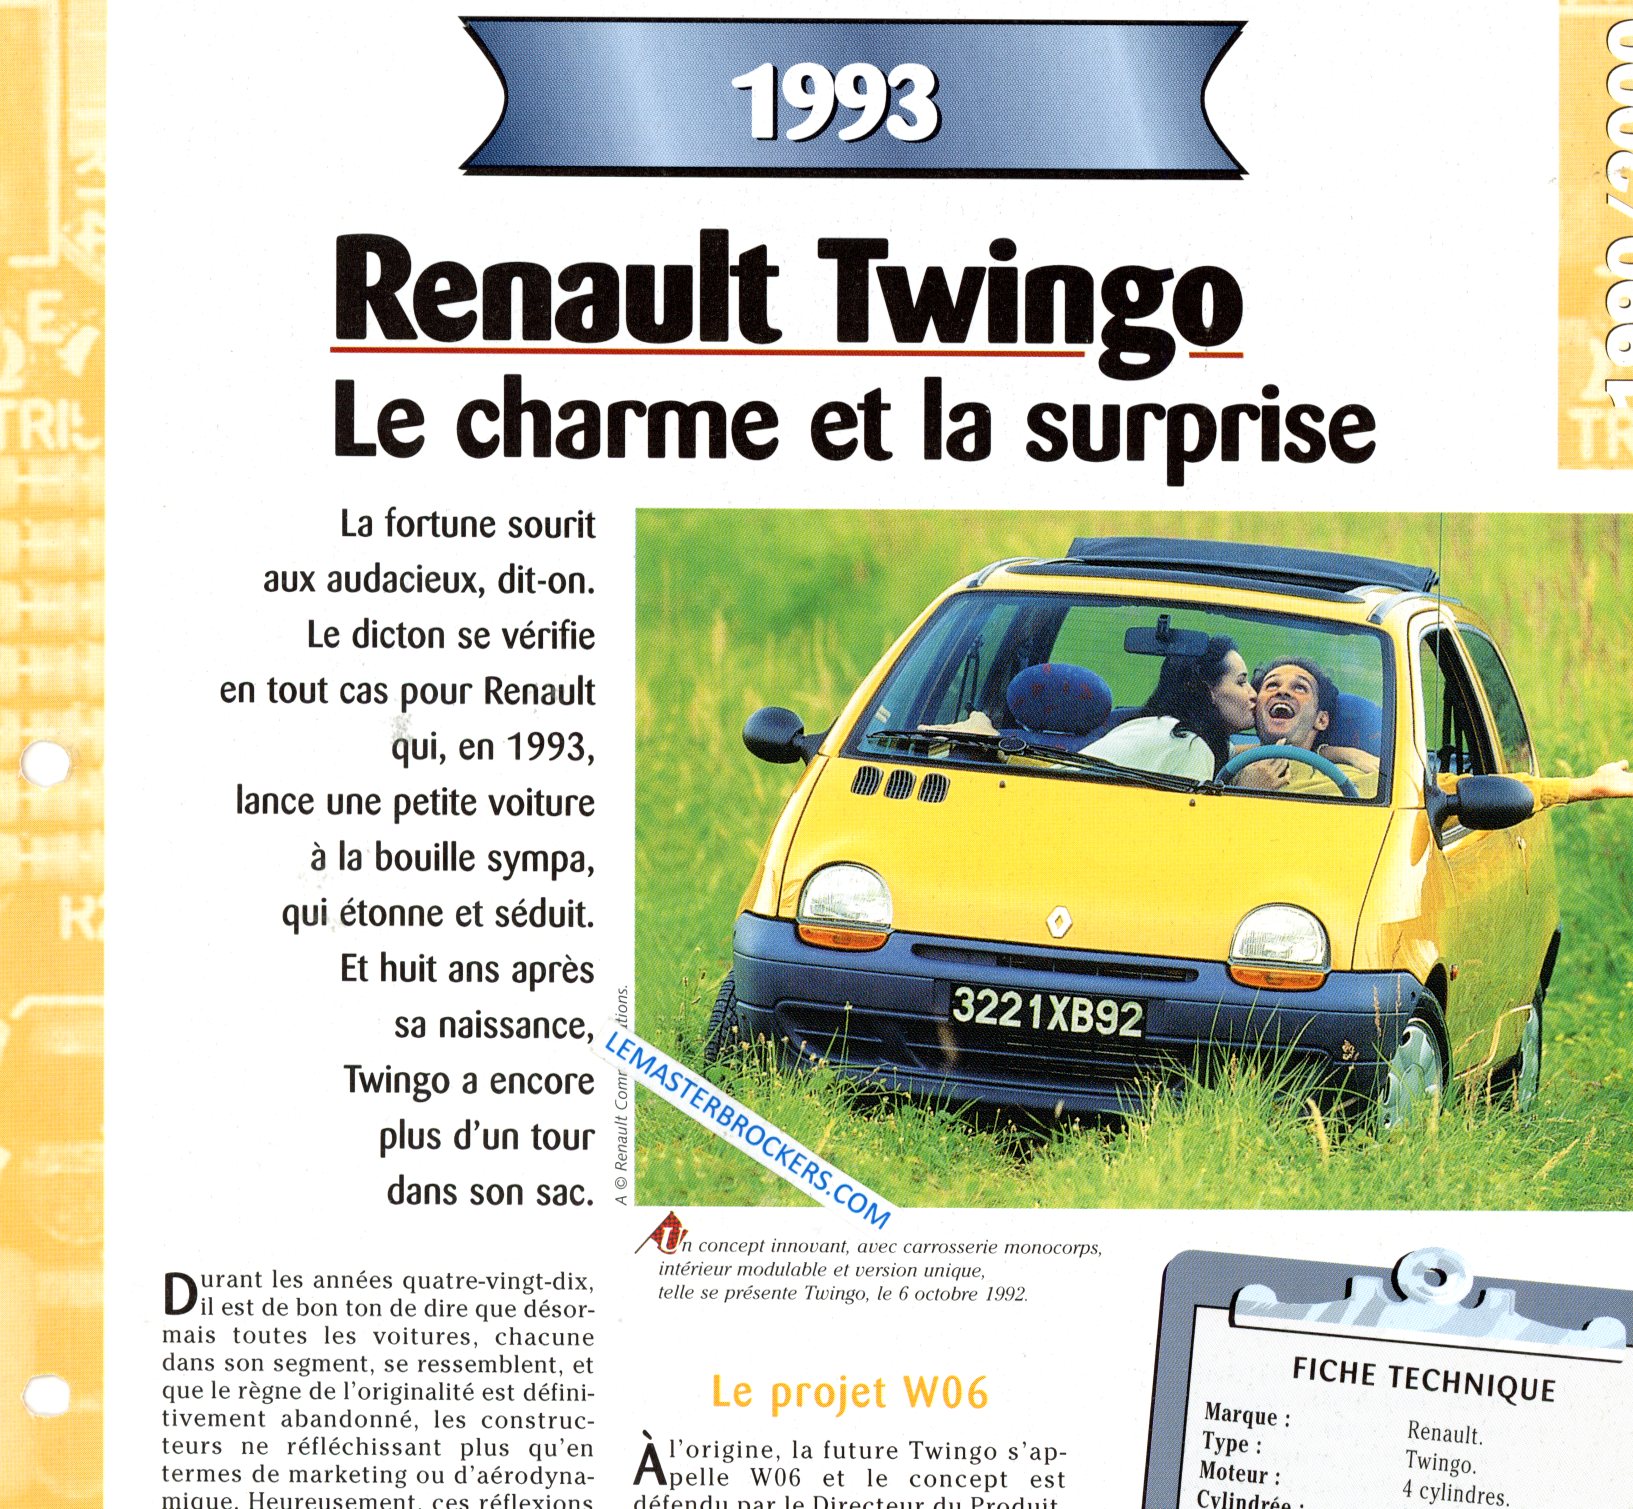 RENAULT TWINGO 1993 FICHE TECHNIQUE